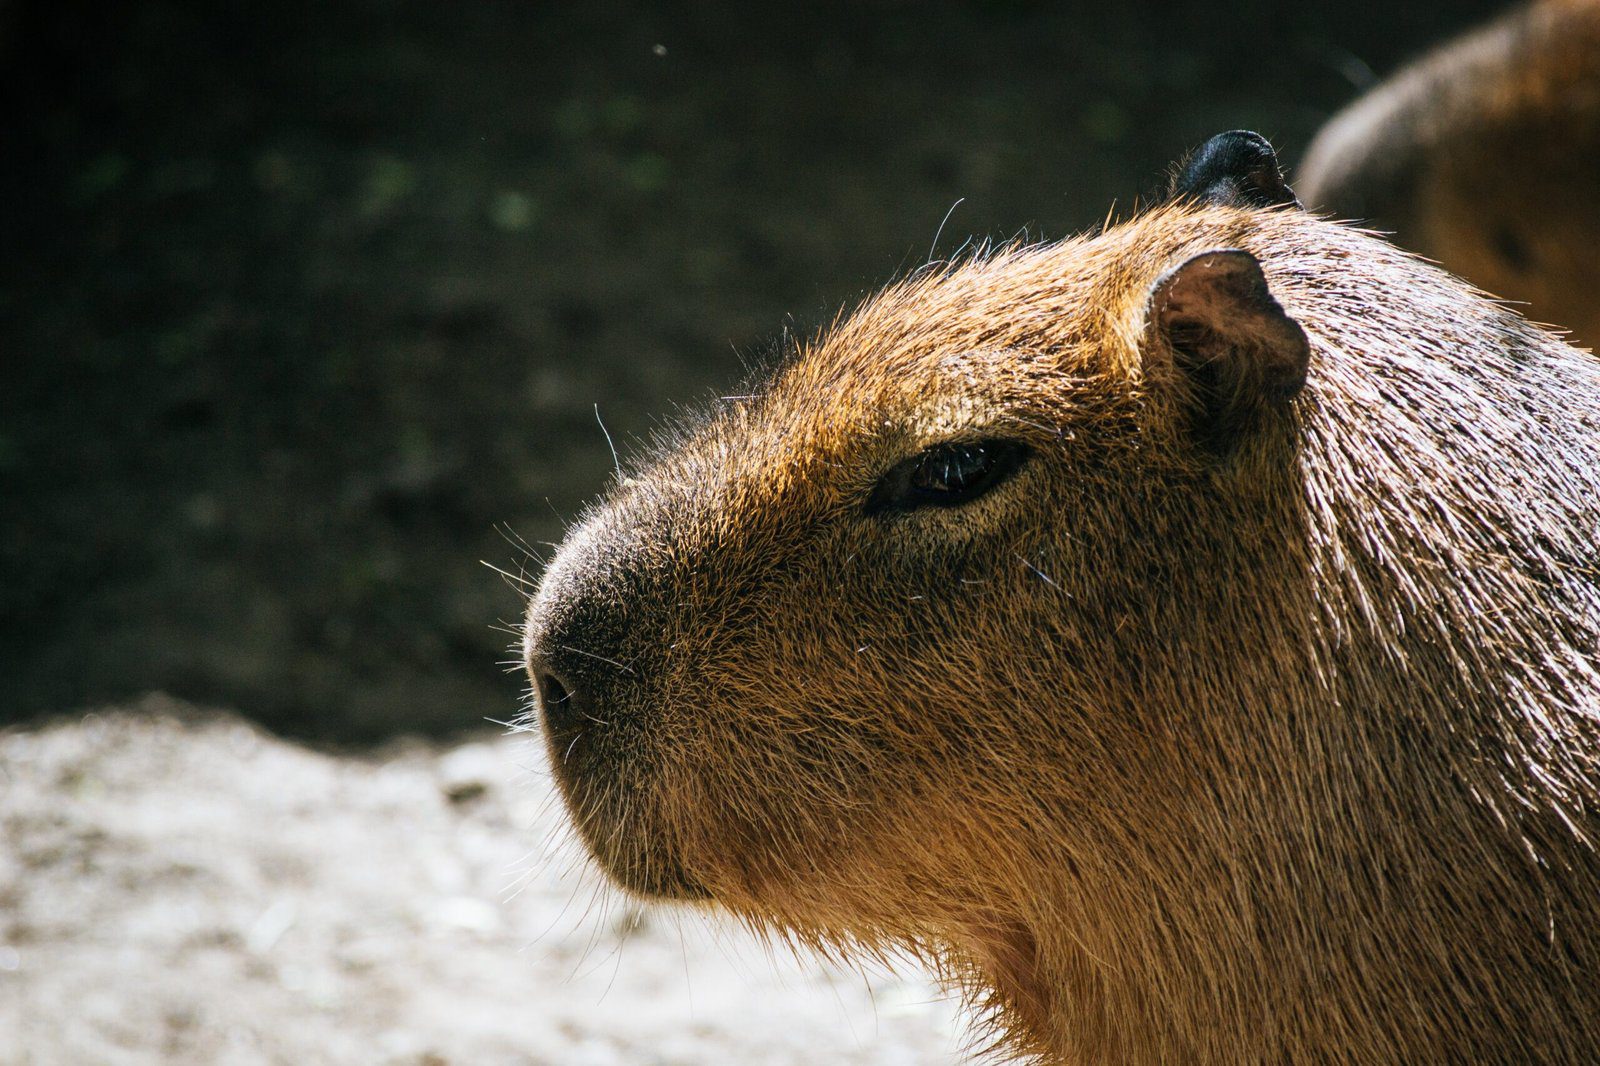 The Presence of Capybaras in Mexico